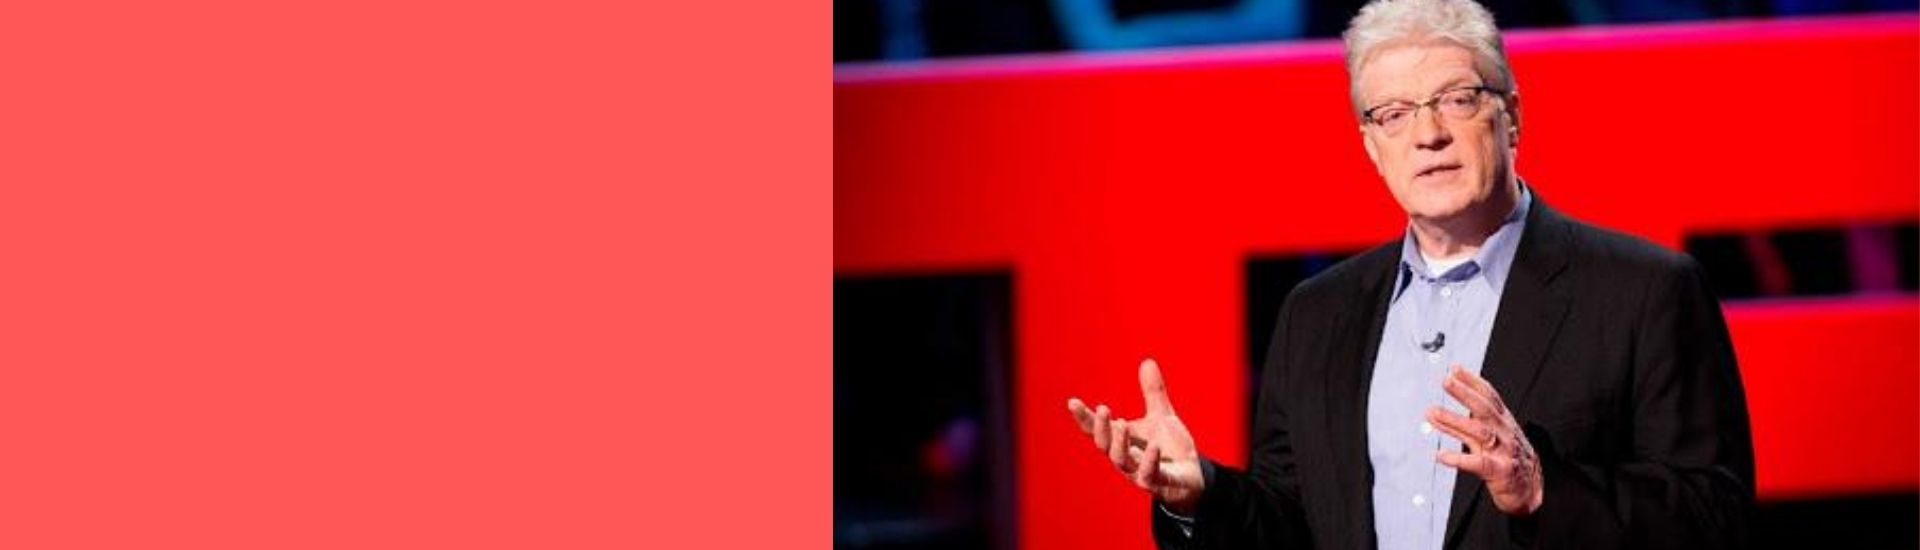 Ken Robinson en una charla TED